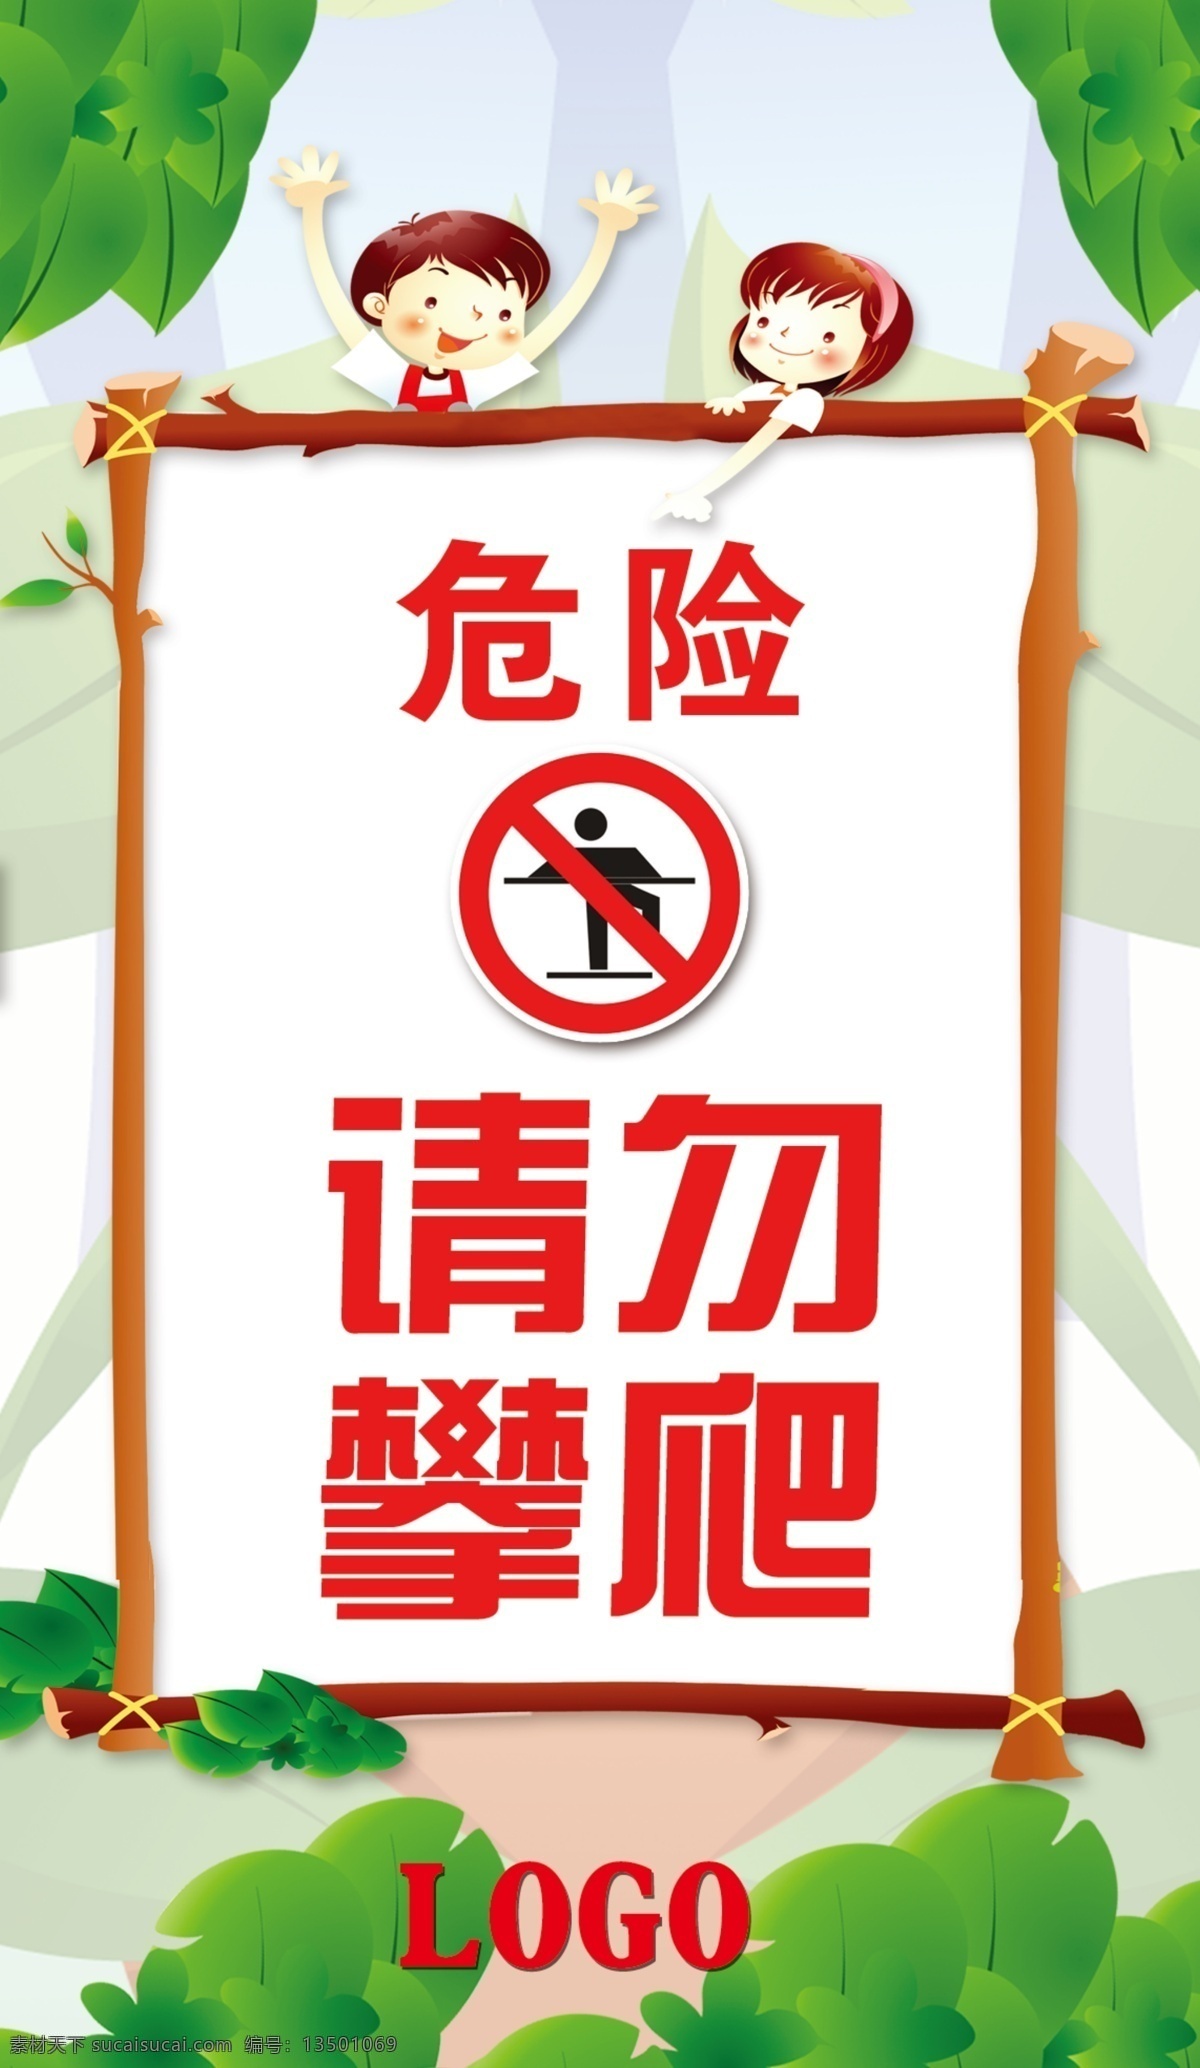 温馨提示 危险 请勿攀爬 电梯提示 牌子 分层素材 绿色 安全